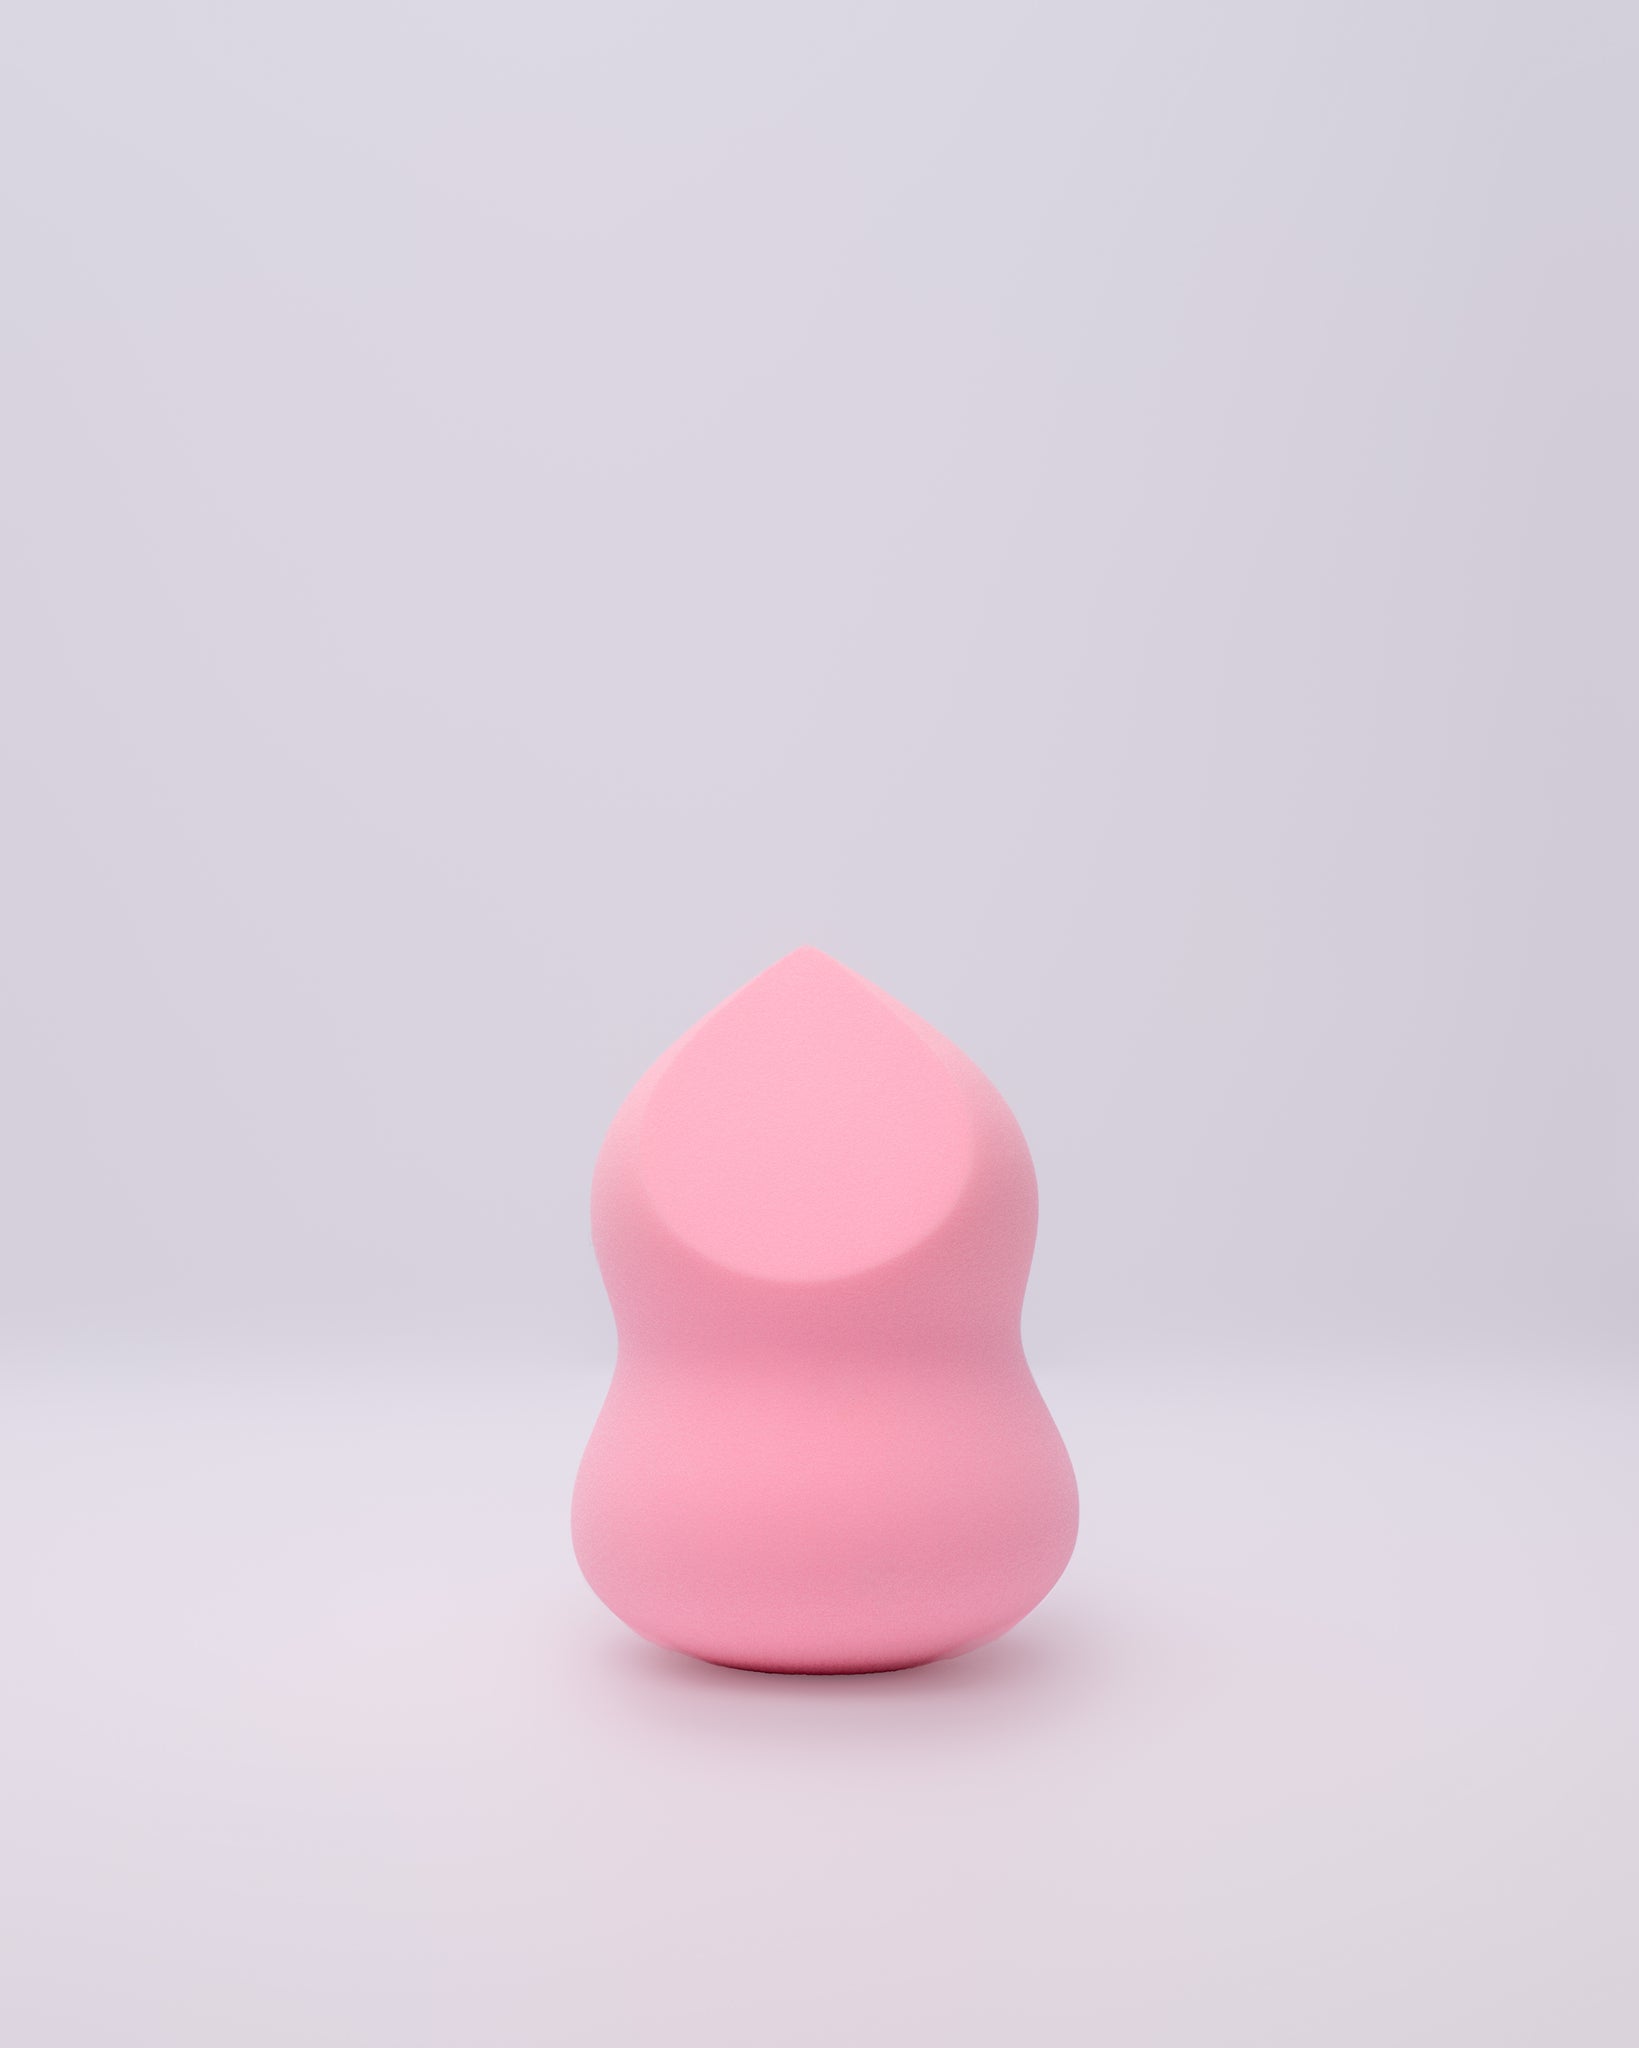 Beauty Blender - Sculpted Shape Pink